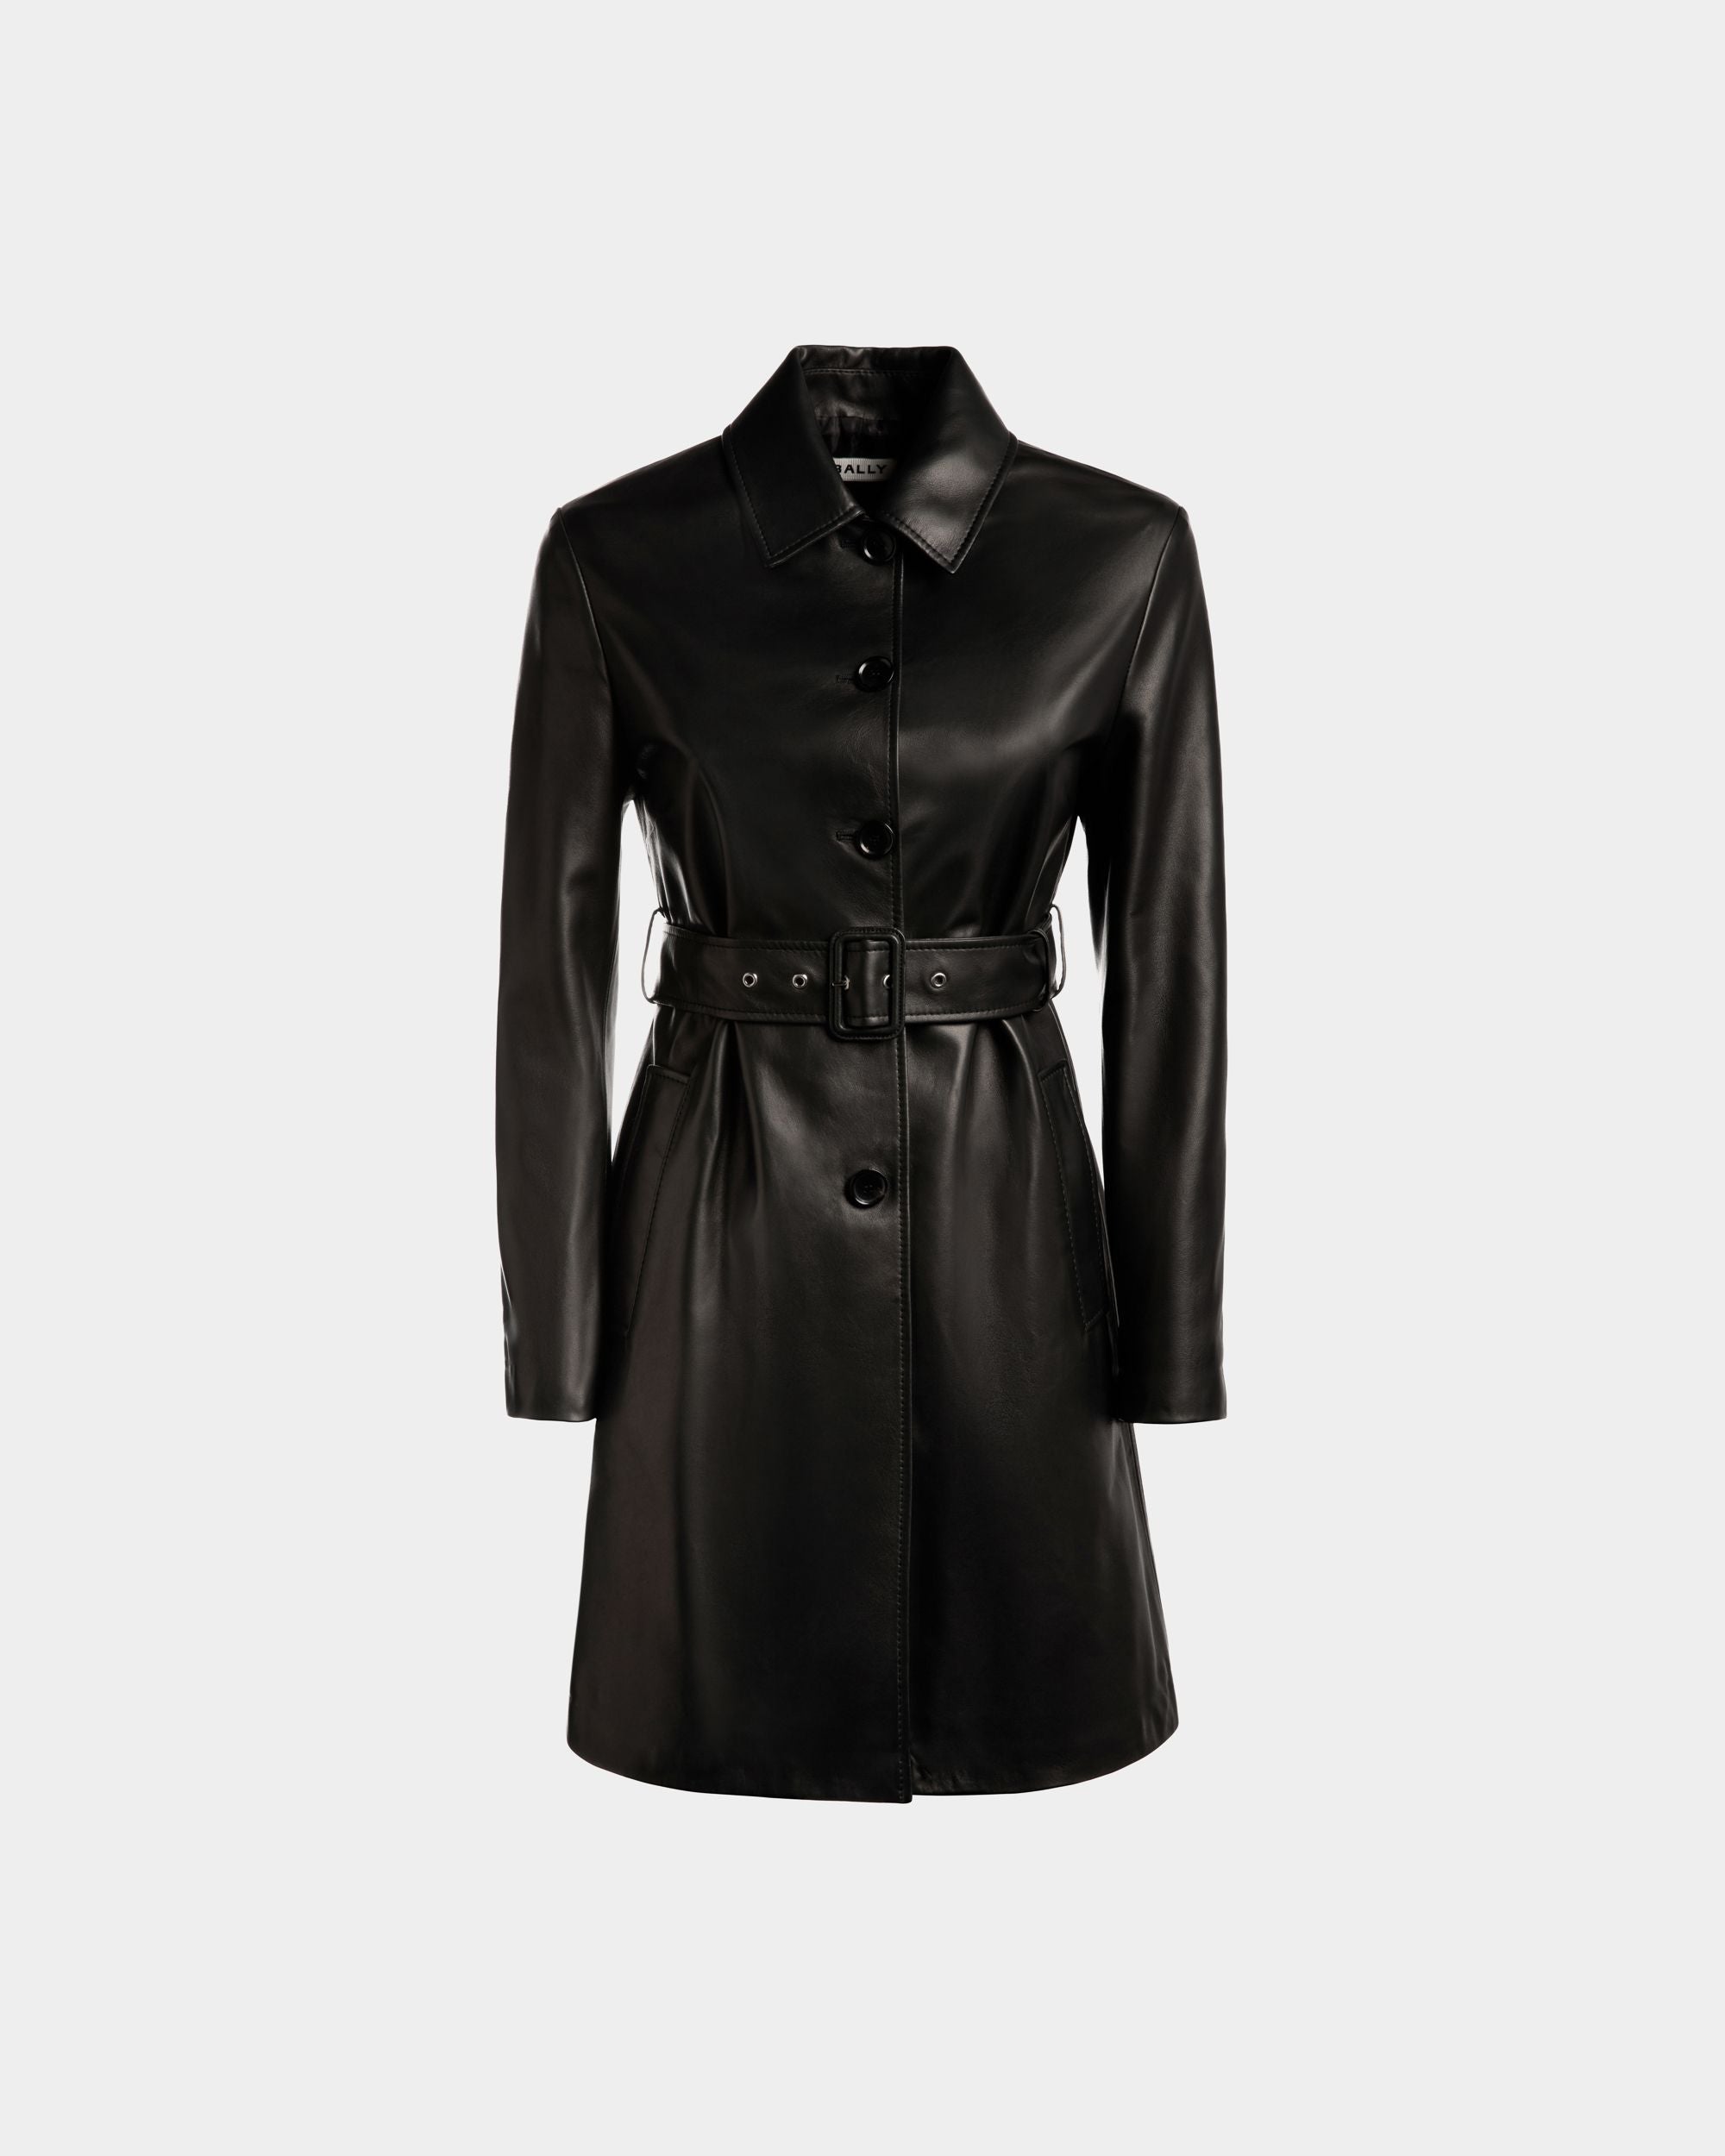 Cappotto midi da donna in pelle nera con cintura | Bally | Still Life Fronte